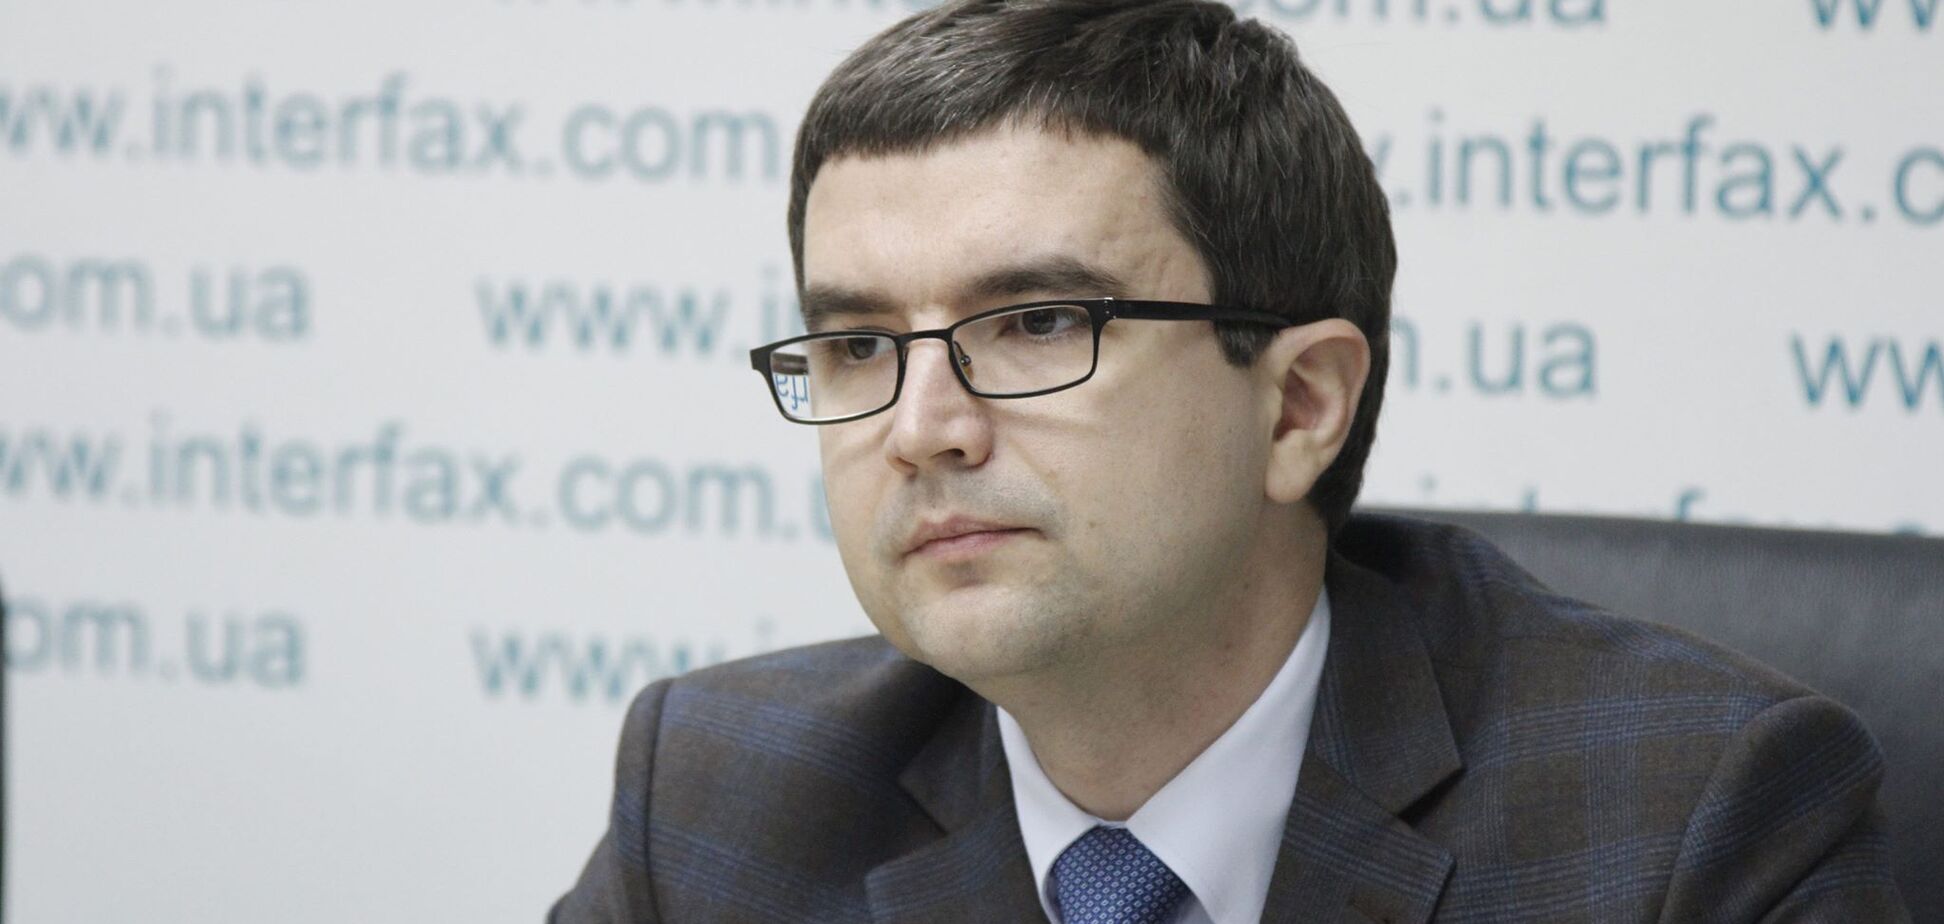 Адвокат Насірова: обов'язки і обмеження щодо Романа Насірова - незаконні, недійсні і повинні бути скасовані судом